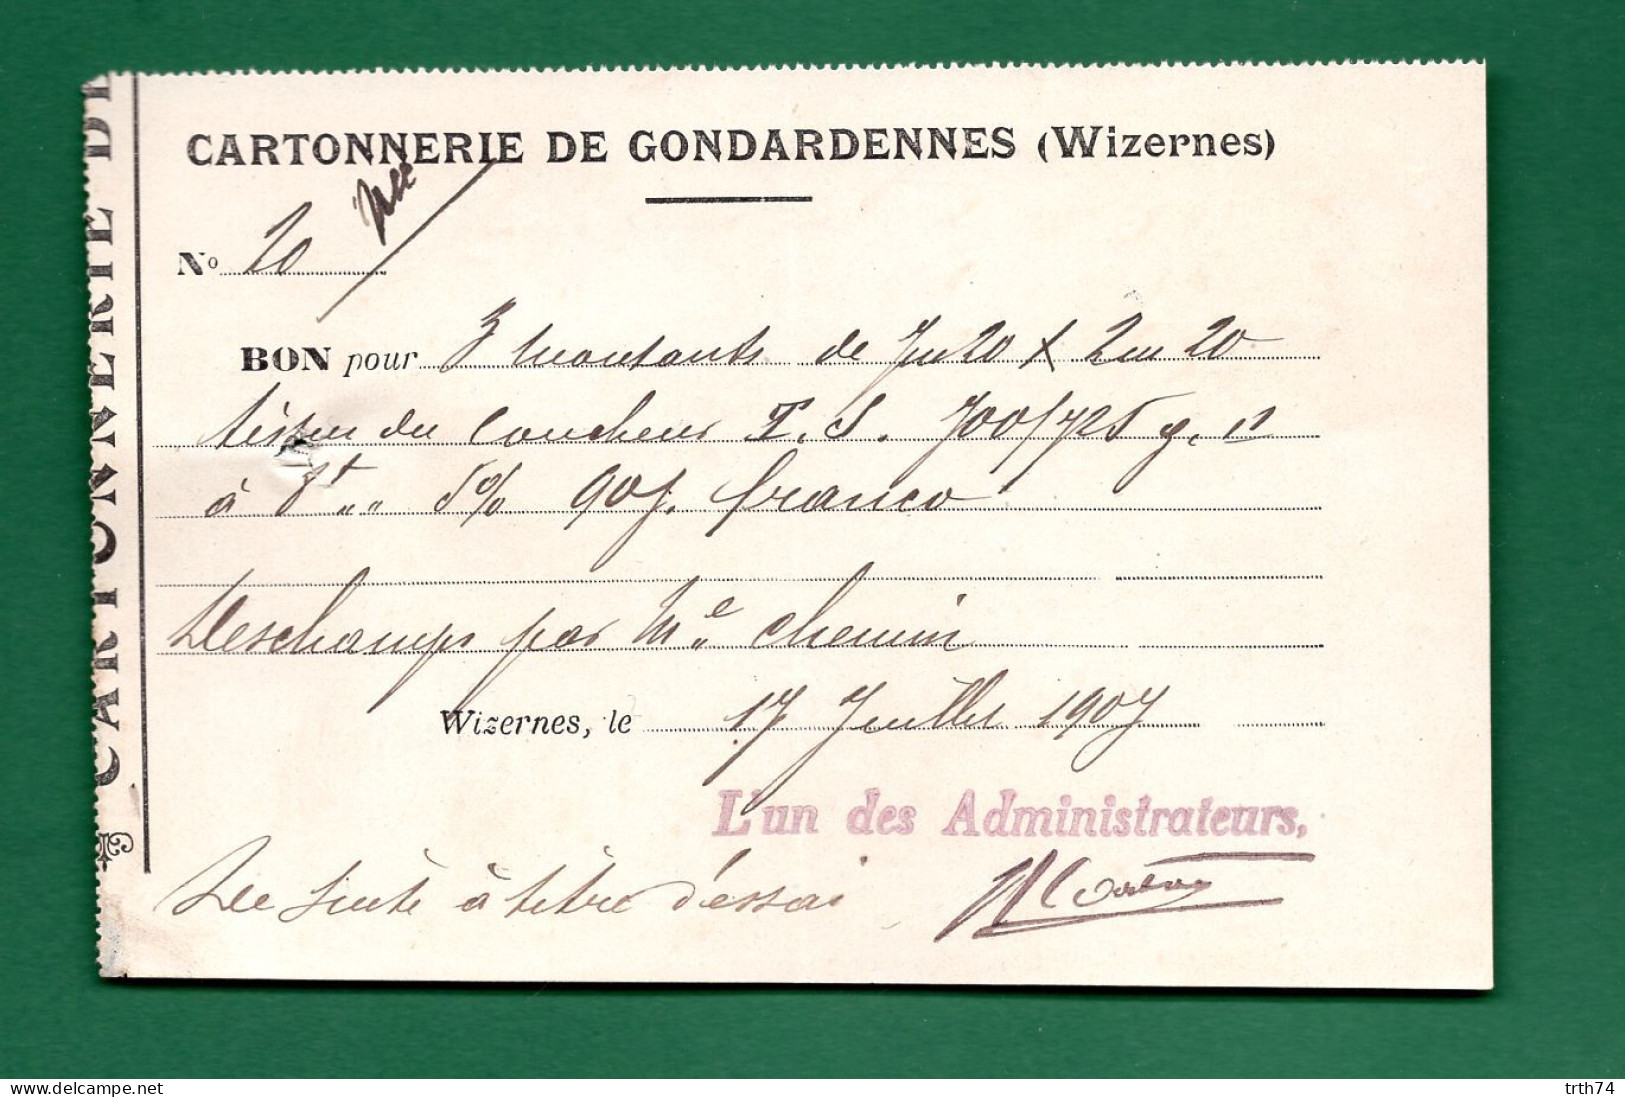 62 Wizernes Cartonnerie De Gondardennes 17 Juillet 1907 - Druck & Papierwaren